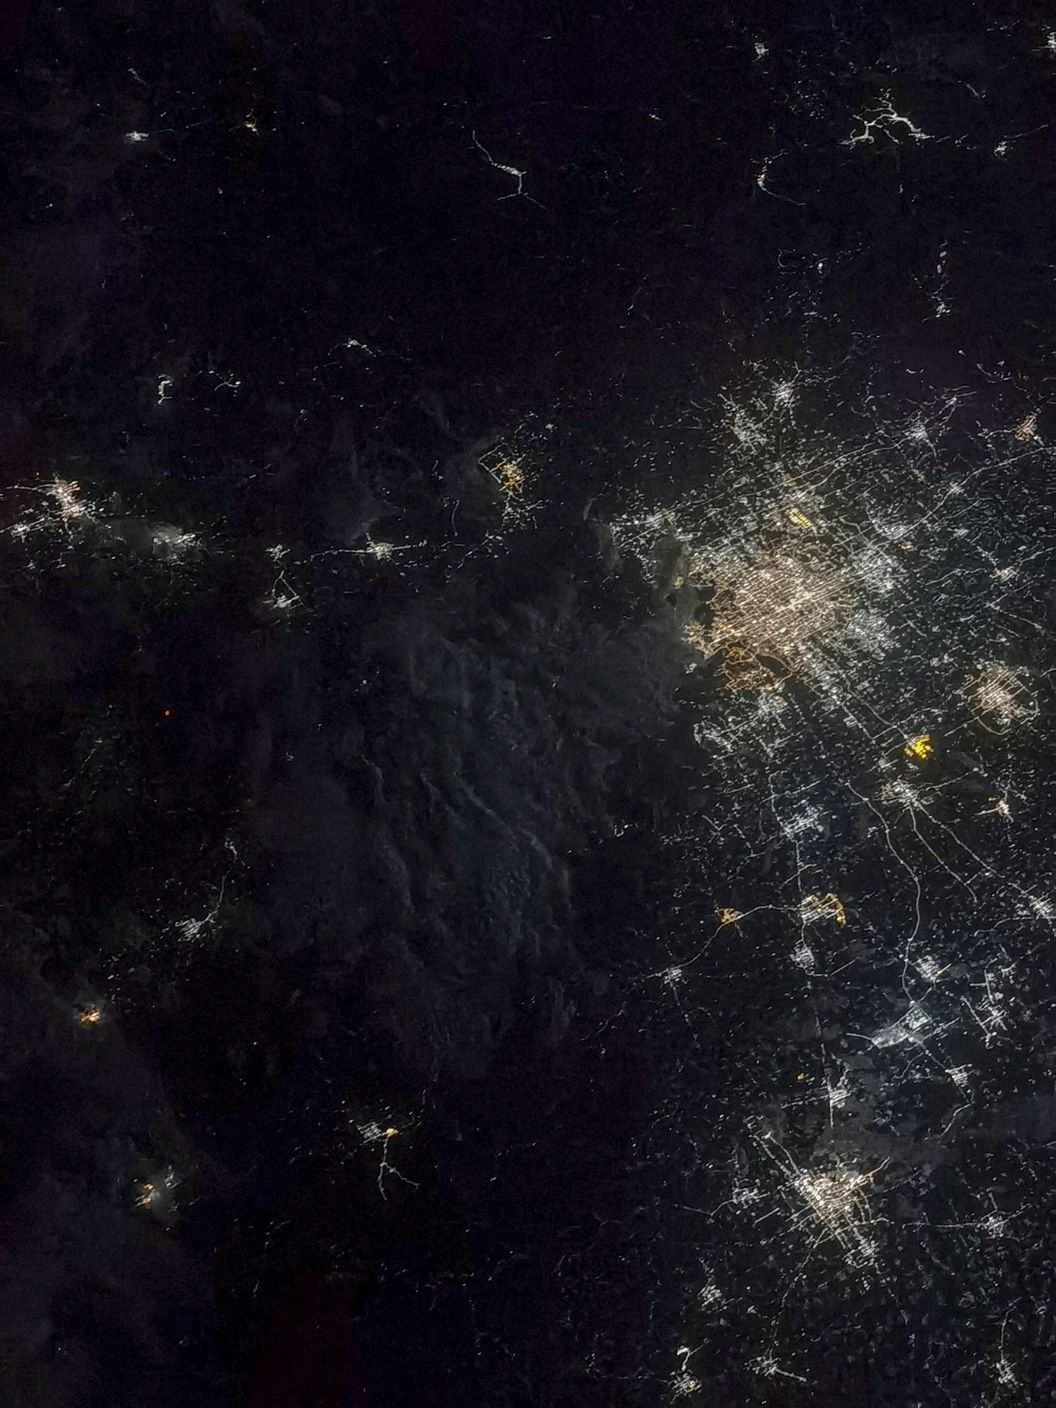 照片右侧那颗金光熠熠的“星星”就是北京大兴国际机场。2021年8月24日晚上9点29分，当核心舱组合体划过北京上空时，聂海胜拍下了这张北京夜景。航天员 聂海胜摄